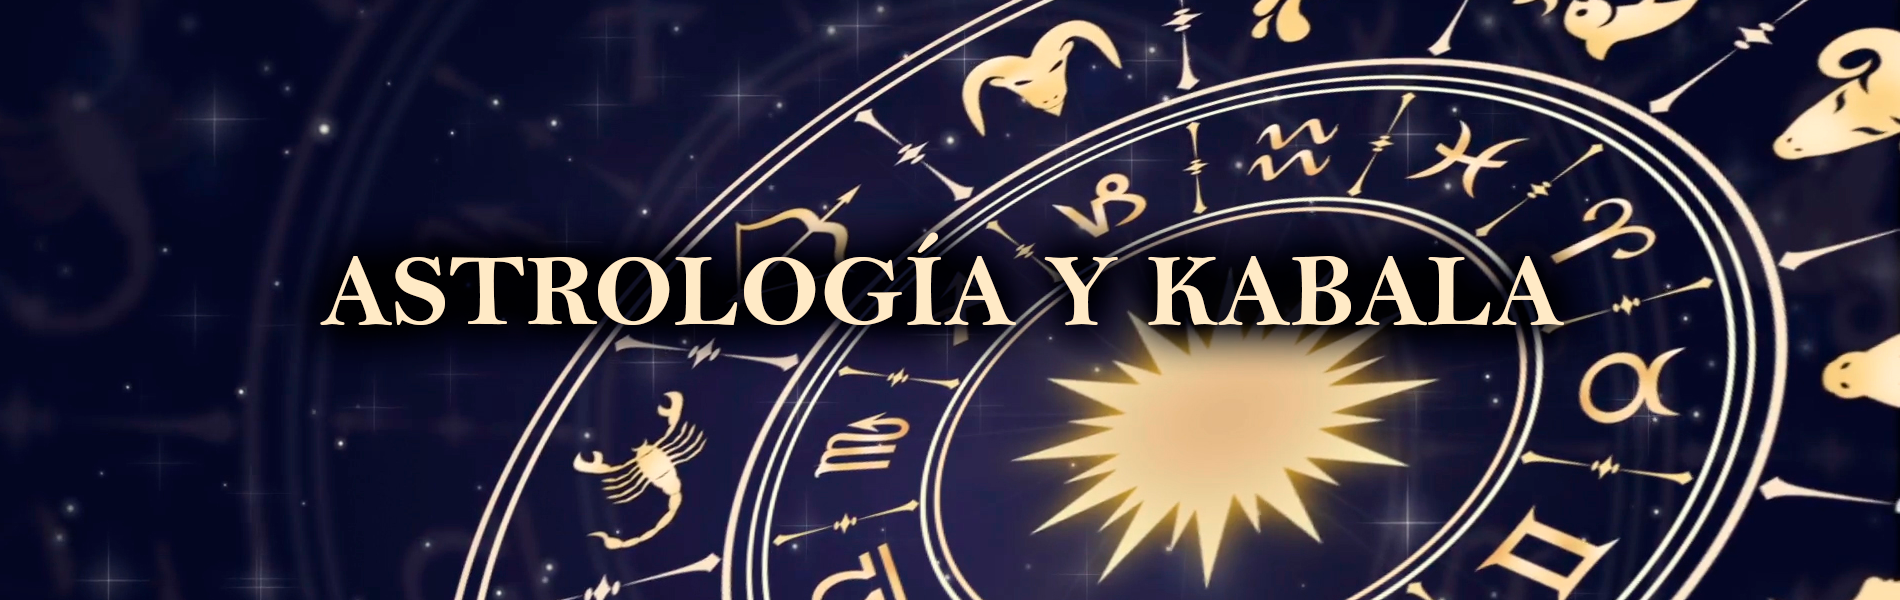 Astrologia y kabala